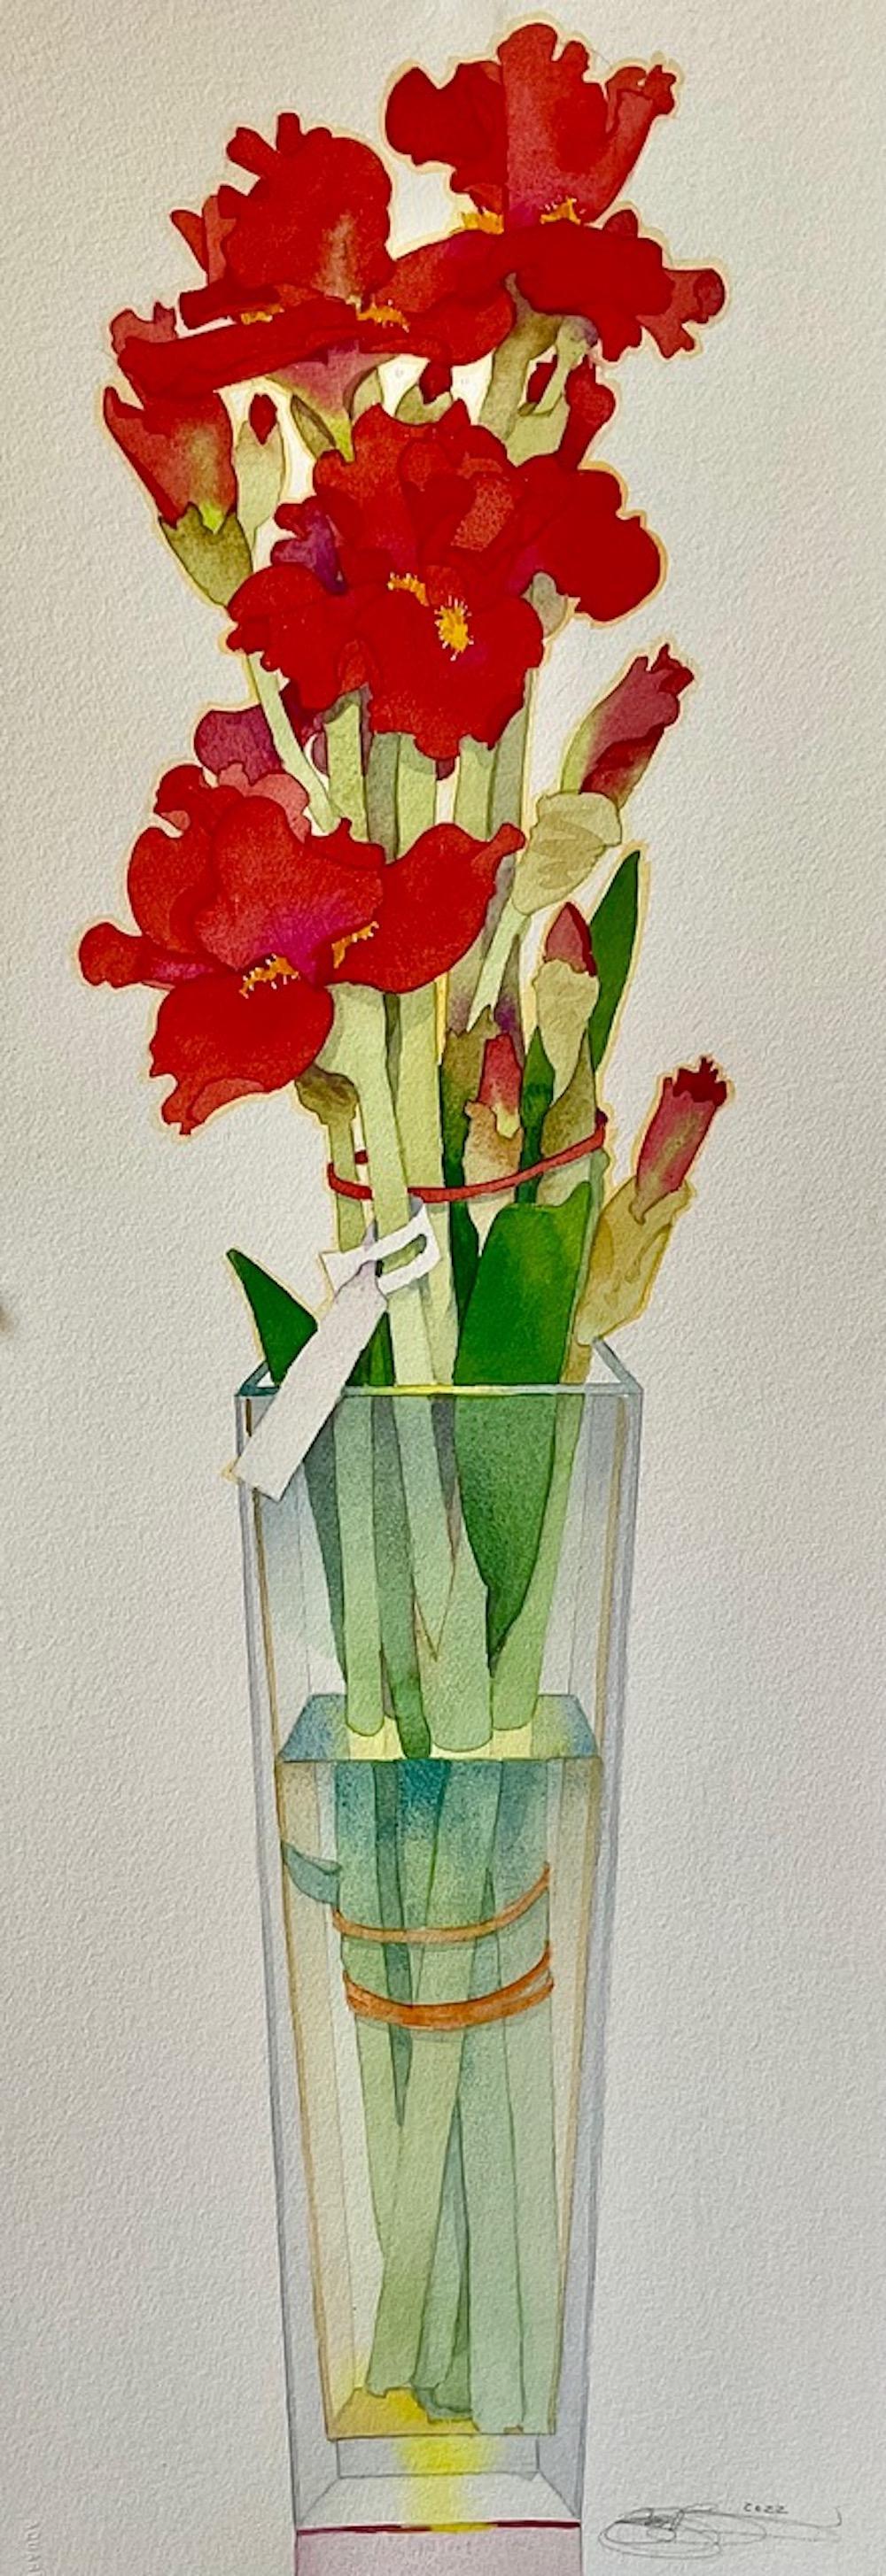 Gary Bukovnik Still-Life - Red Iris